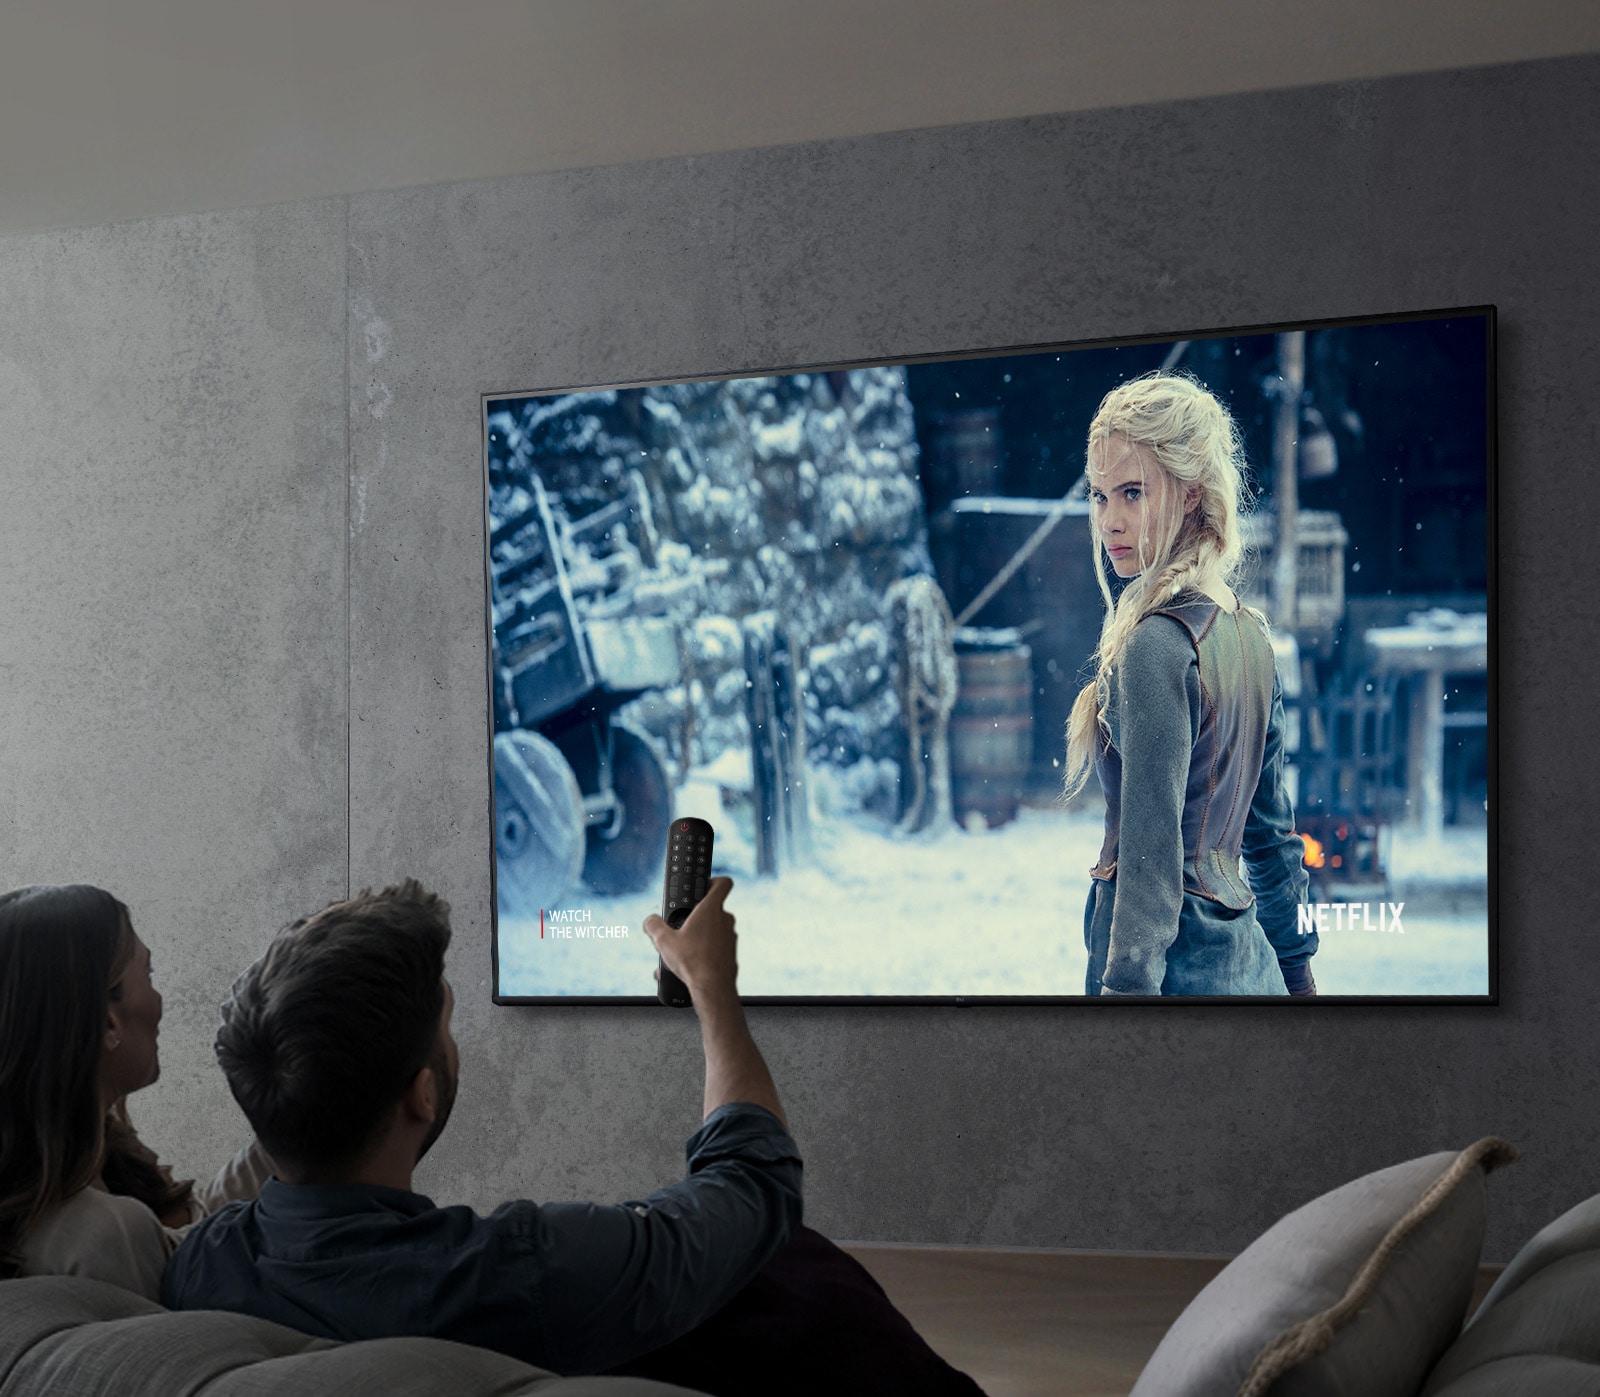 Beeld van een echtpaar dat naar een voorstelling kijkt met een LG UHD TV.